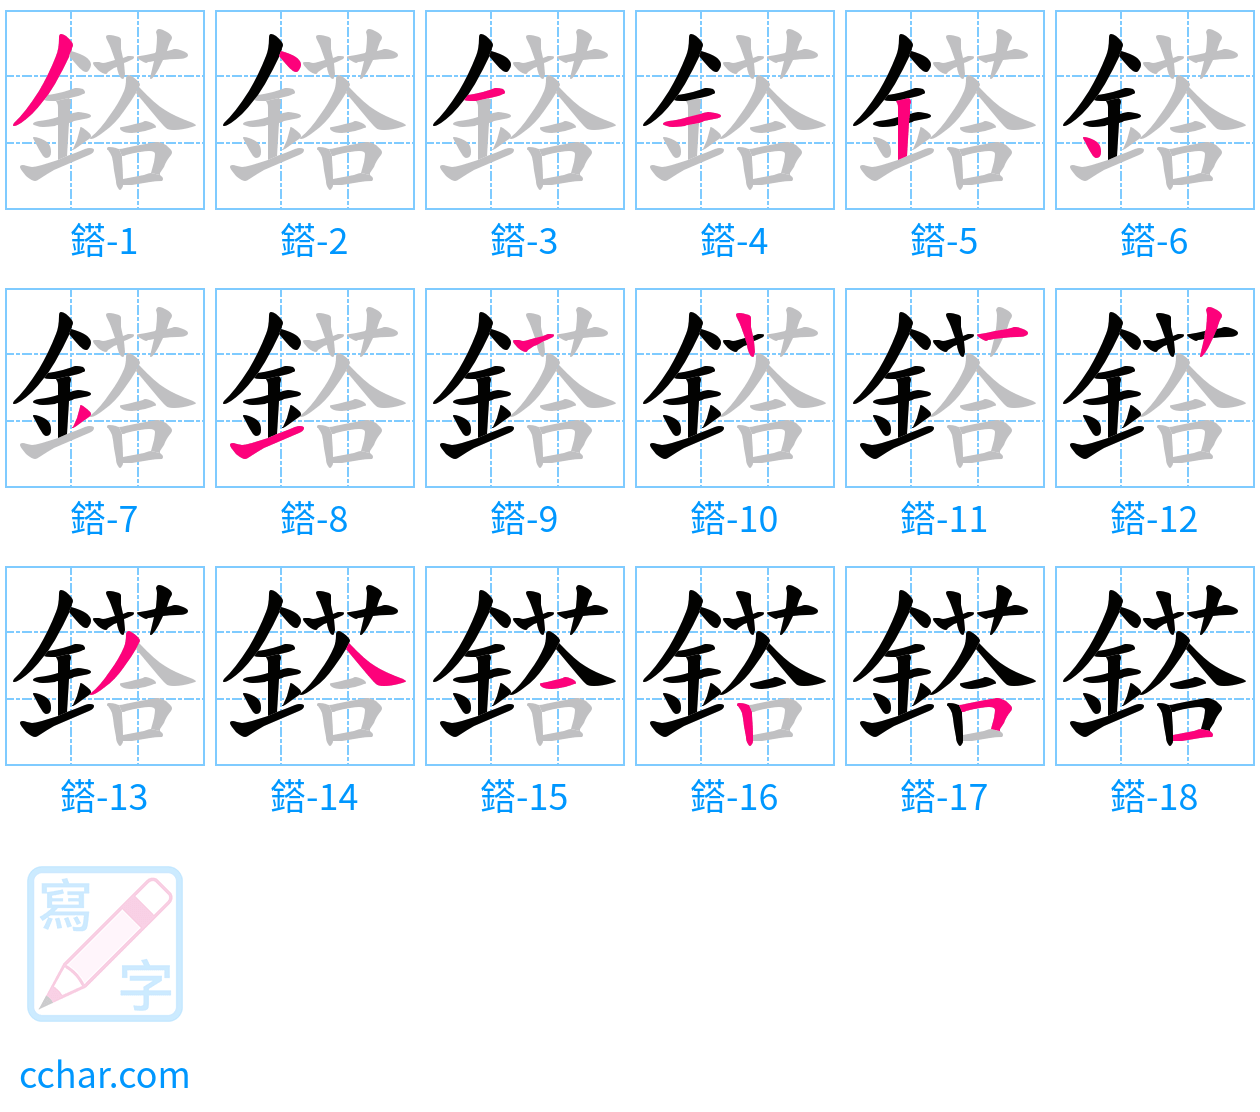 鎝 stroke order step-by-step diagram